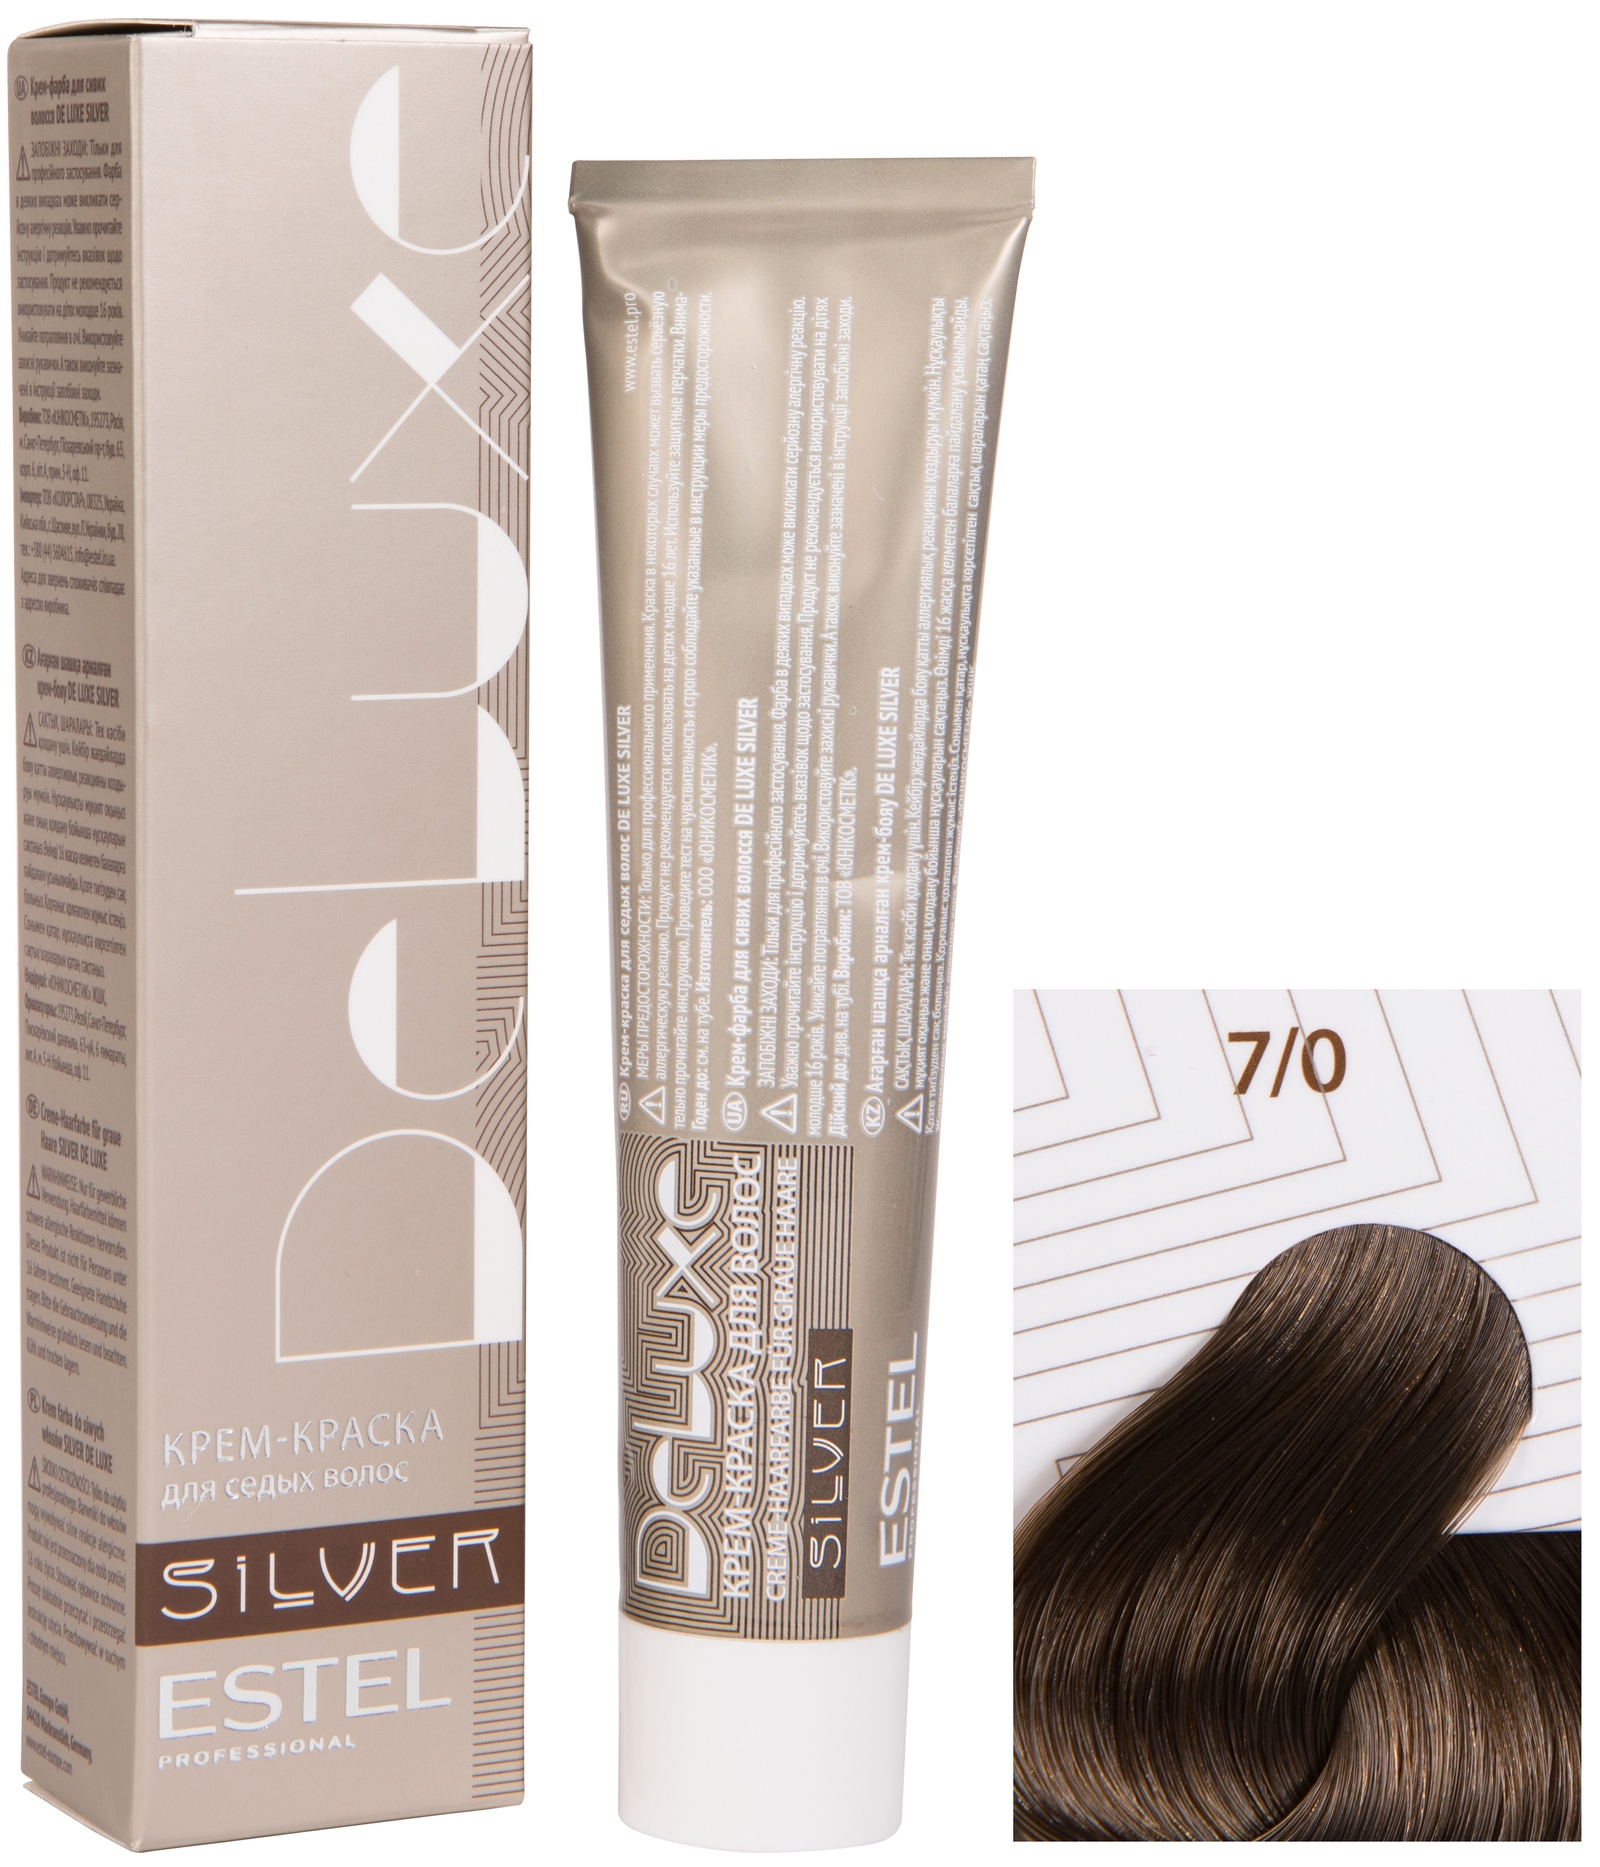 Краска для волос ESTEL PROFESSIONAL 7/0 краска-уход DE LUXE SILVER для окрашивания волос, русый 60 мл